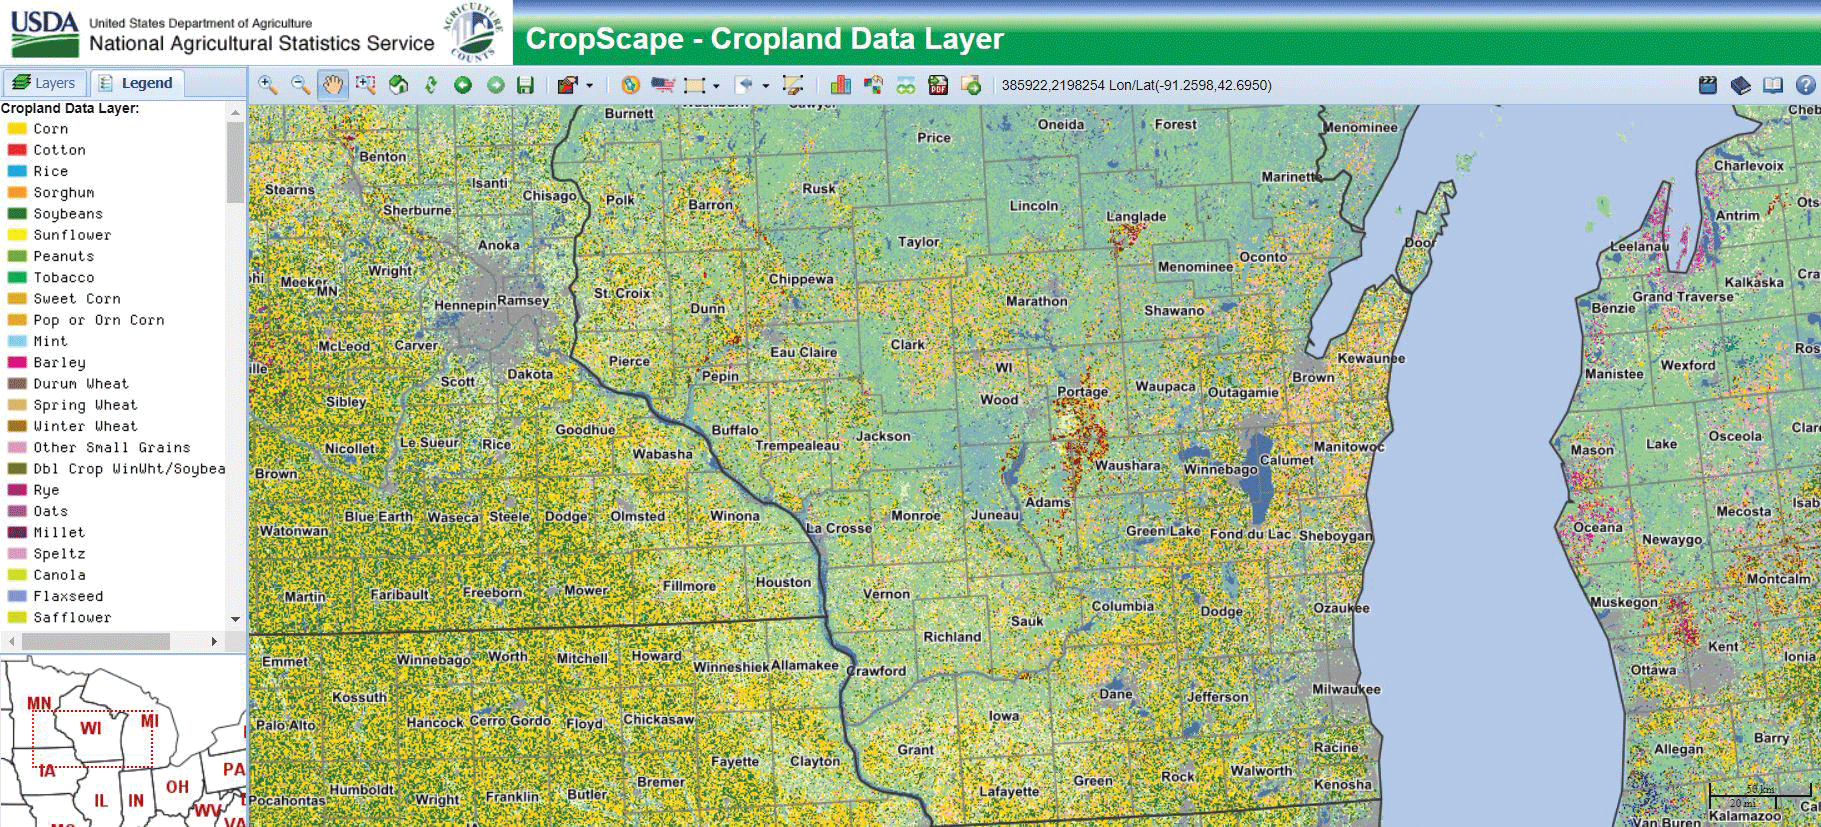 Screen capture showing crop types in Wisconsin.